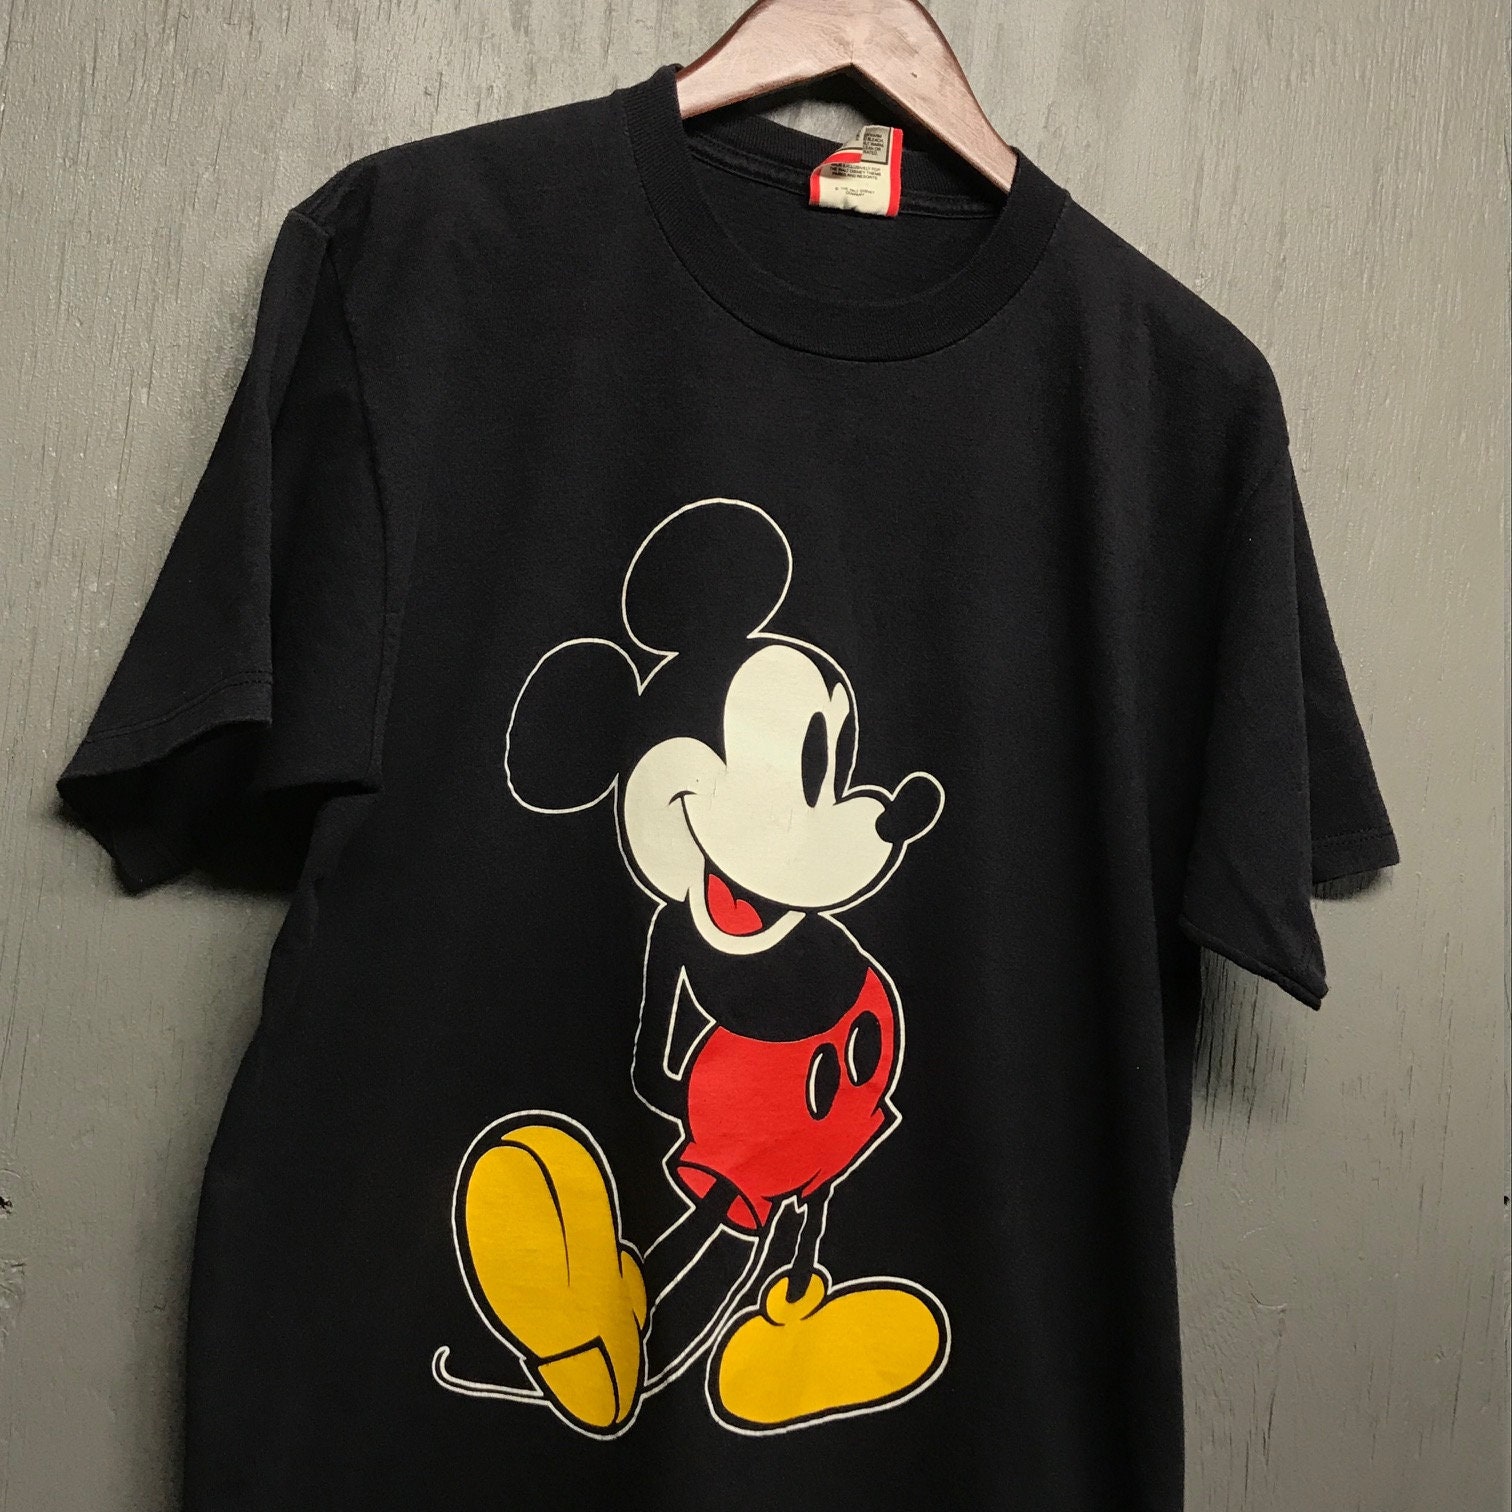 M/L vtg 90s black Mickey Mouse t shirt * medium large